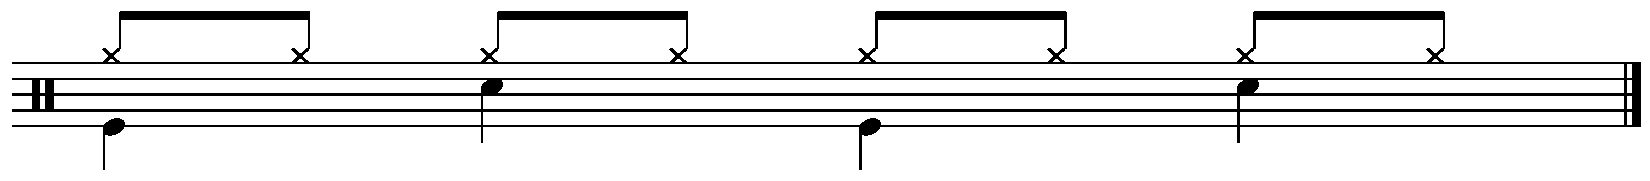 Rhythmische Notation